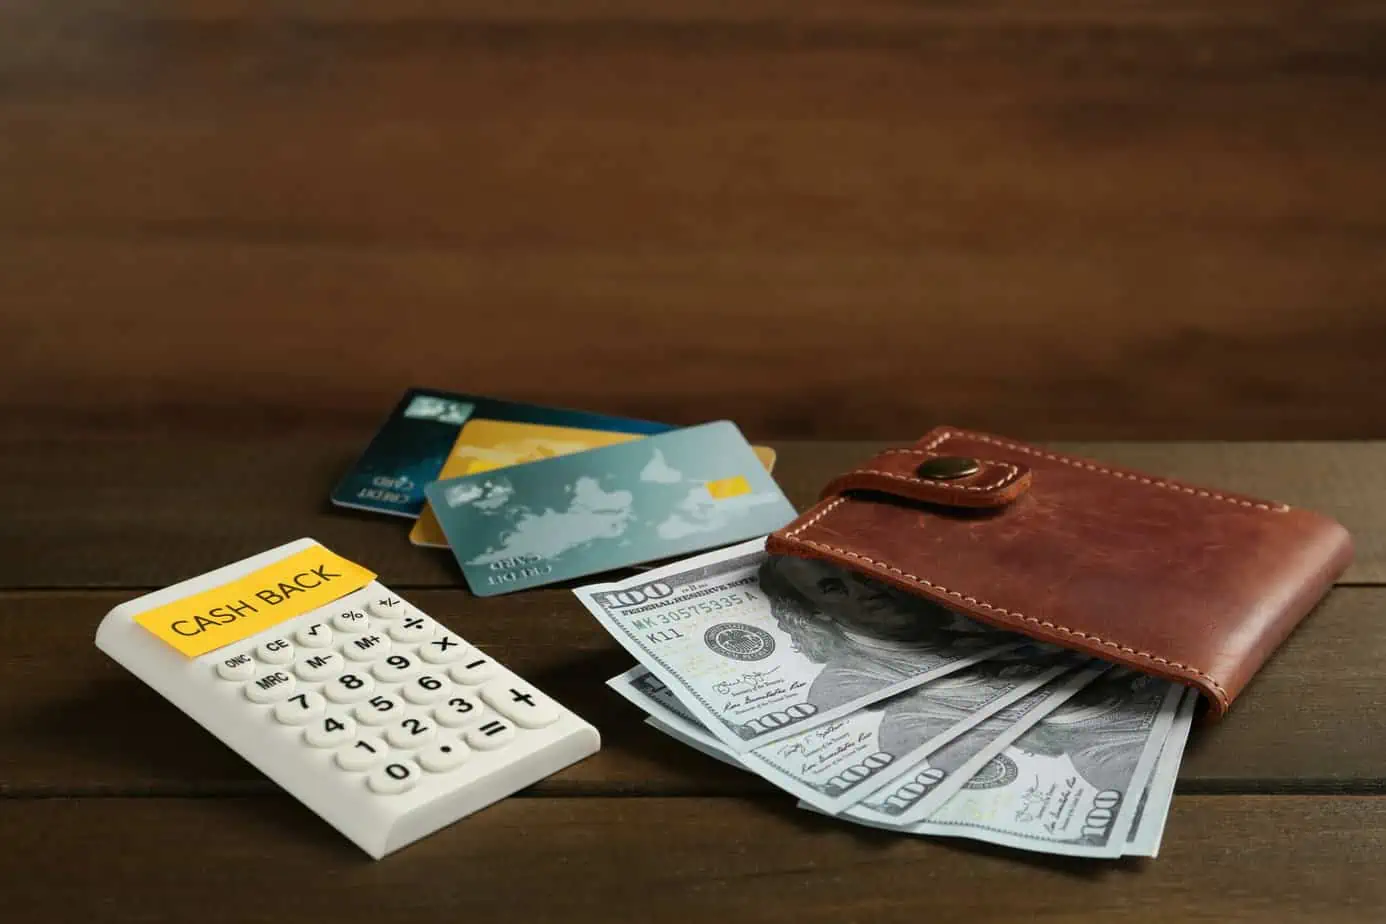 Cash Back Credit Cards